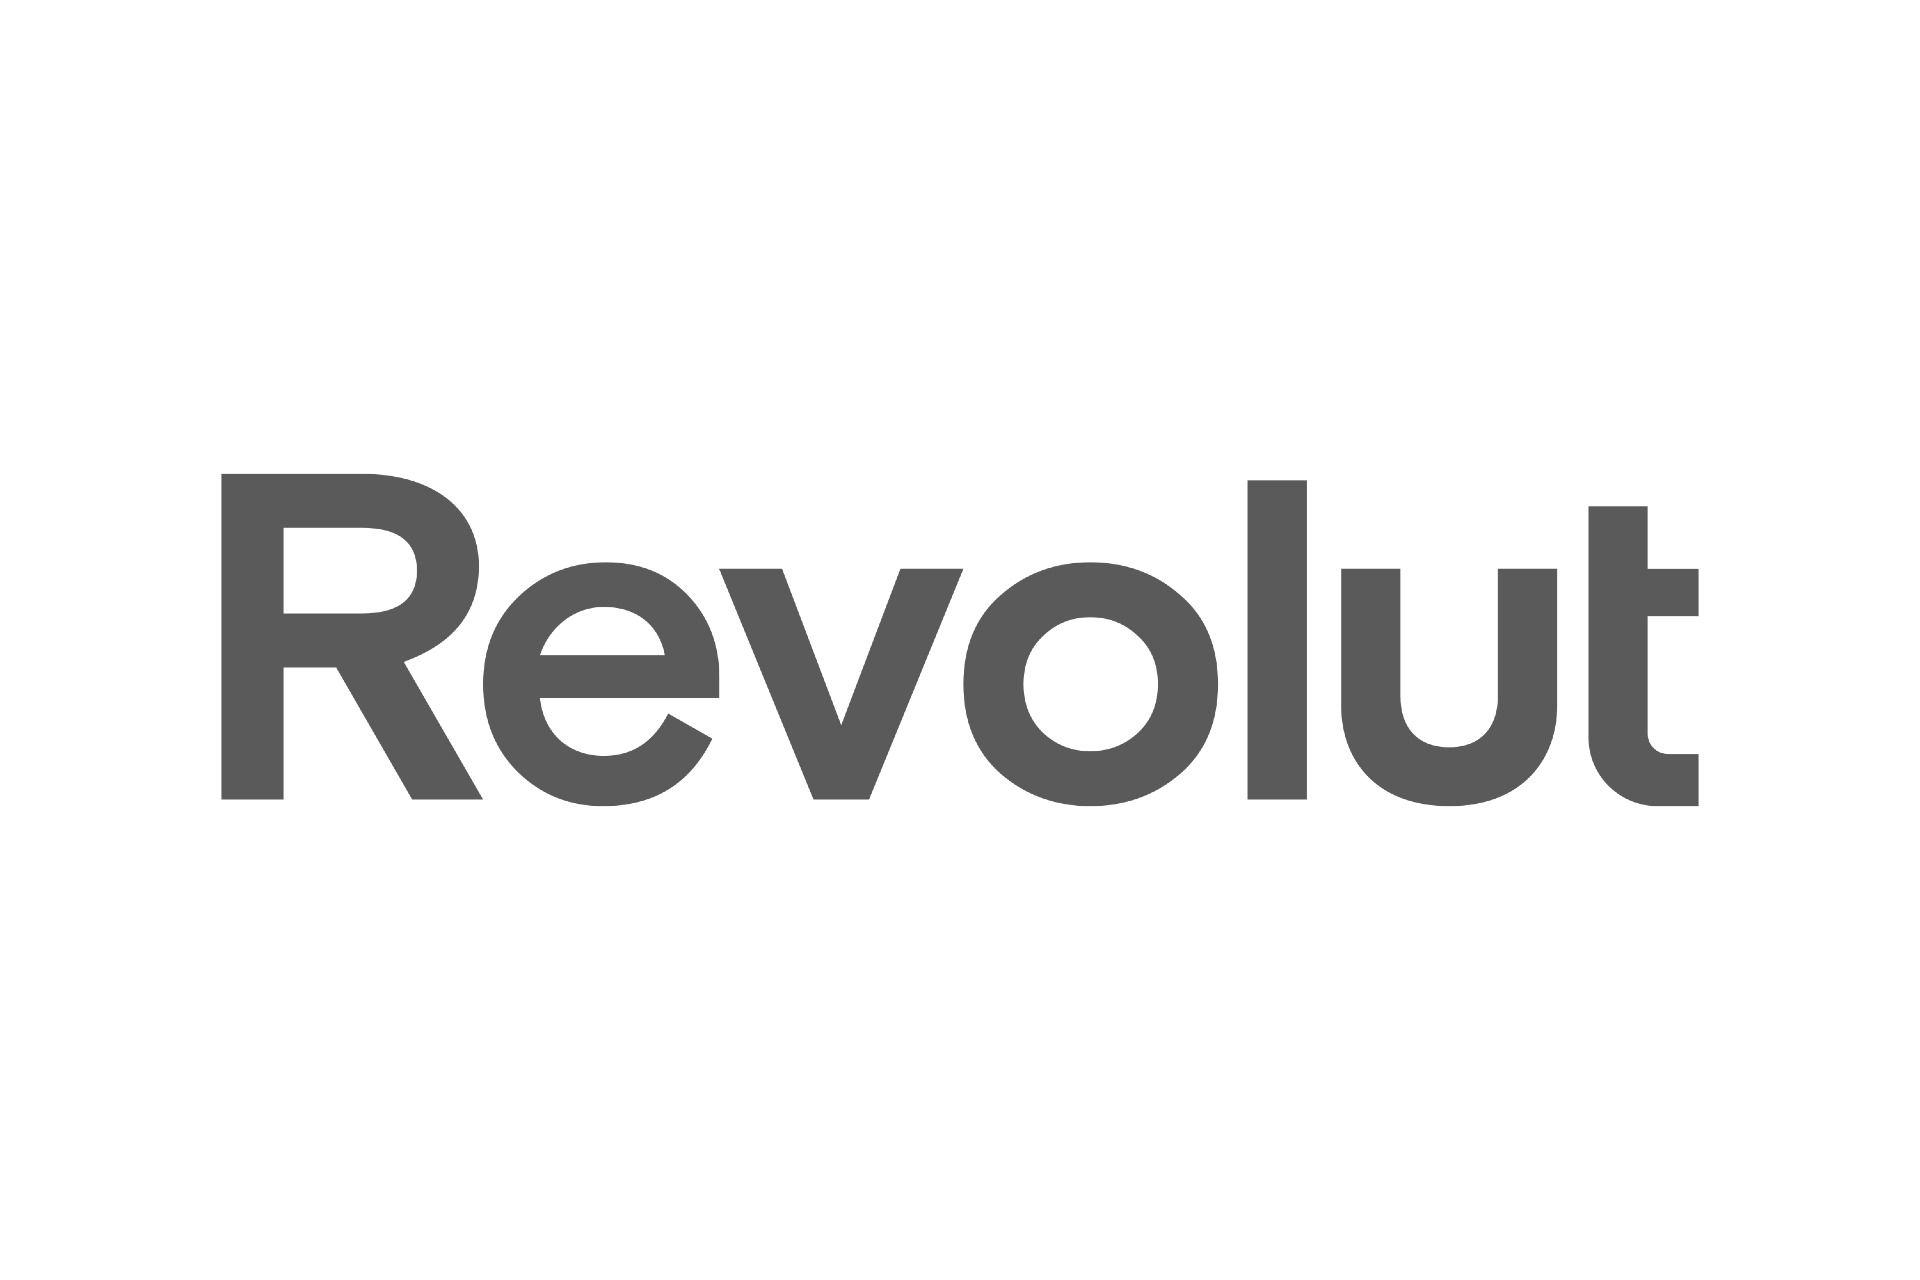 revolut-content-logos.png